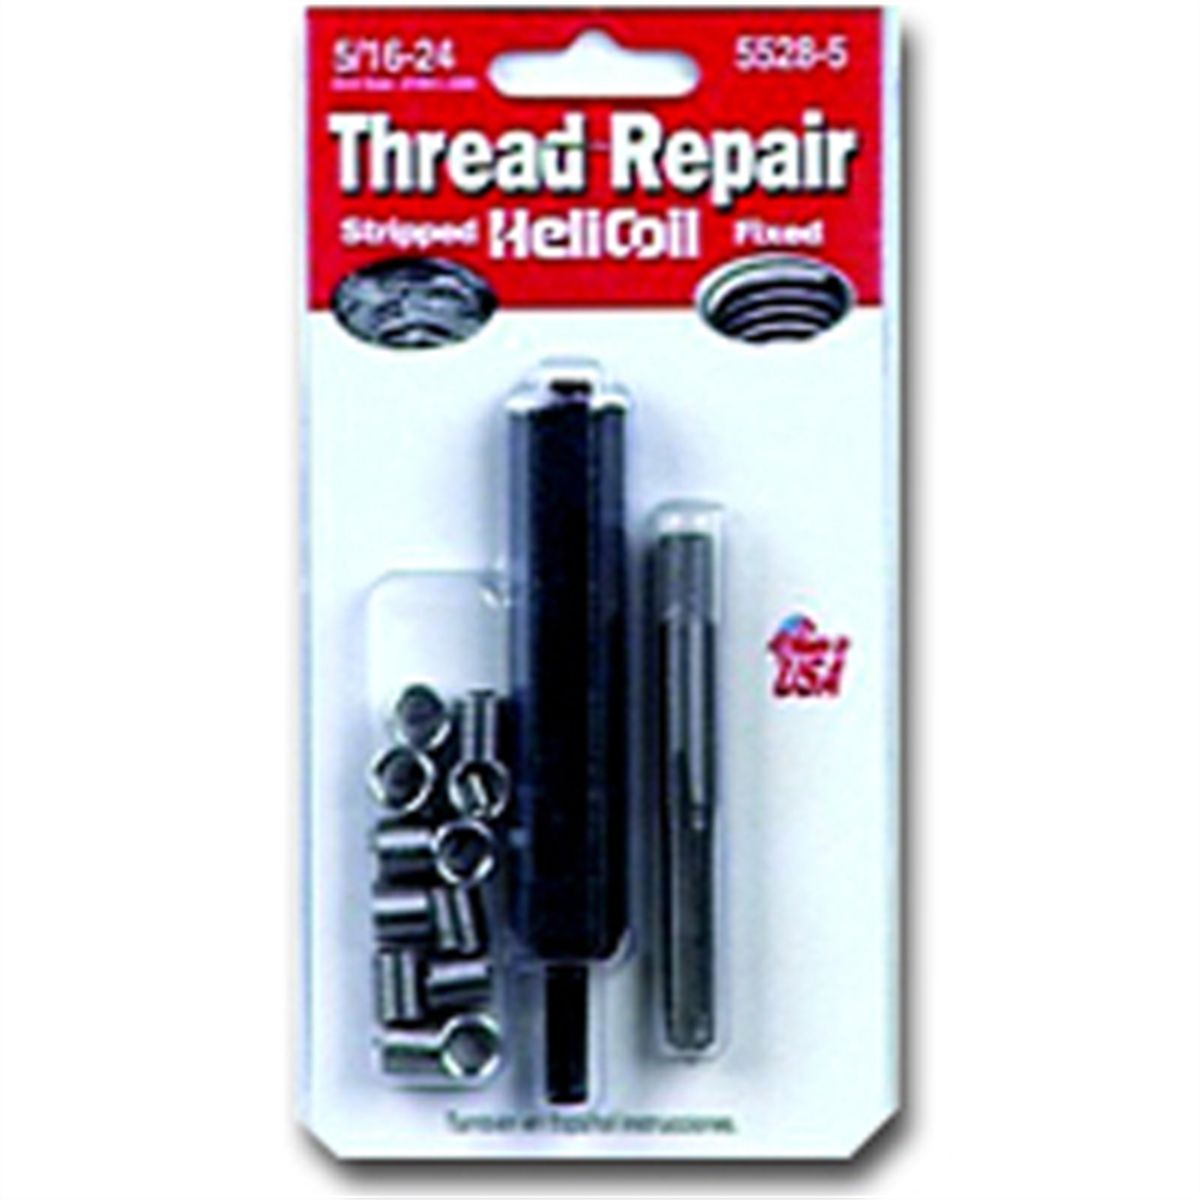 Inch Fine Thread Repair Kit - 10-32 x .285